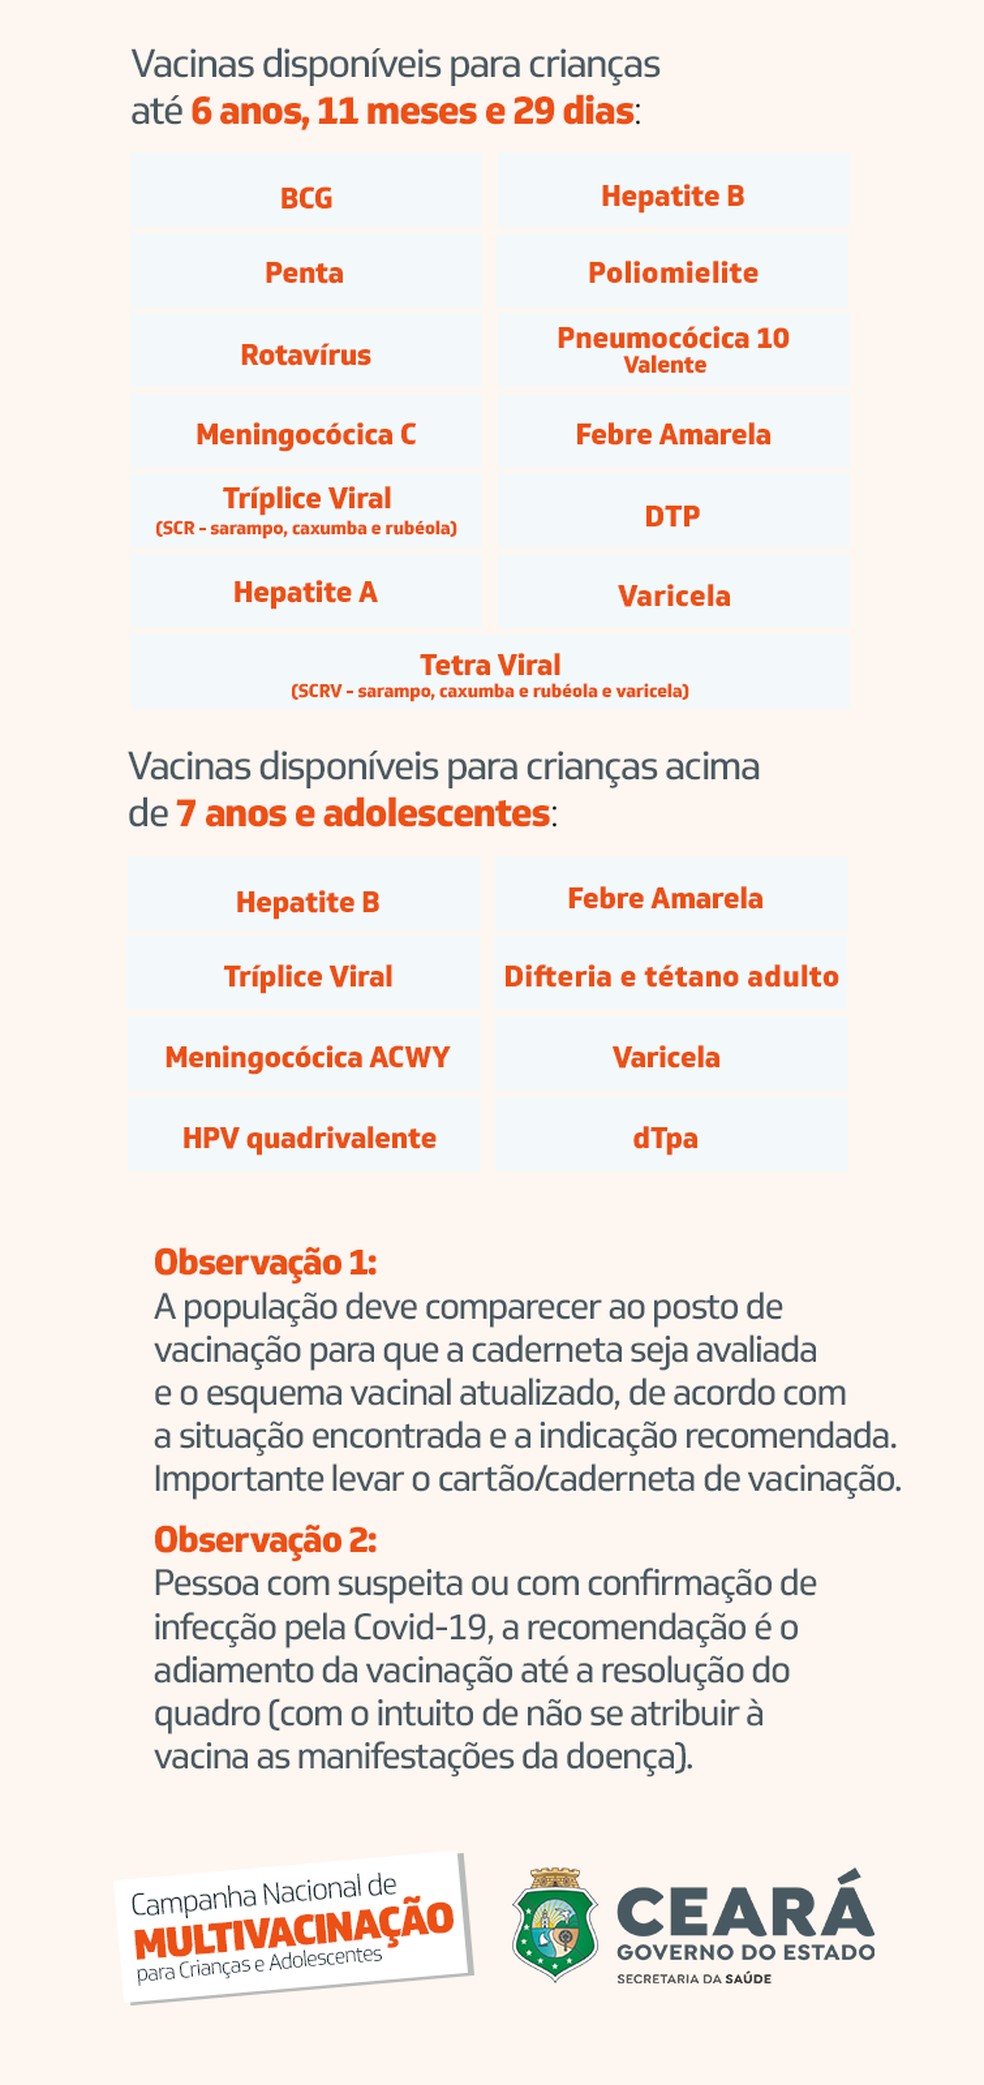 Vacinas disponíveis na campanha multivacinação no Ceará. — Foto: Sesa/Reprodução